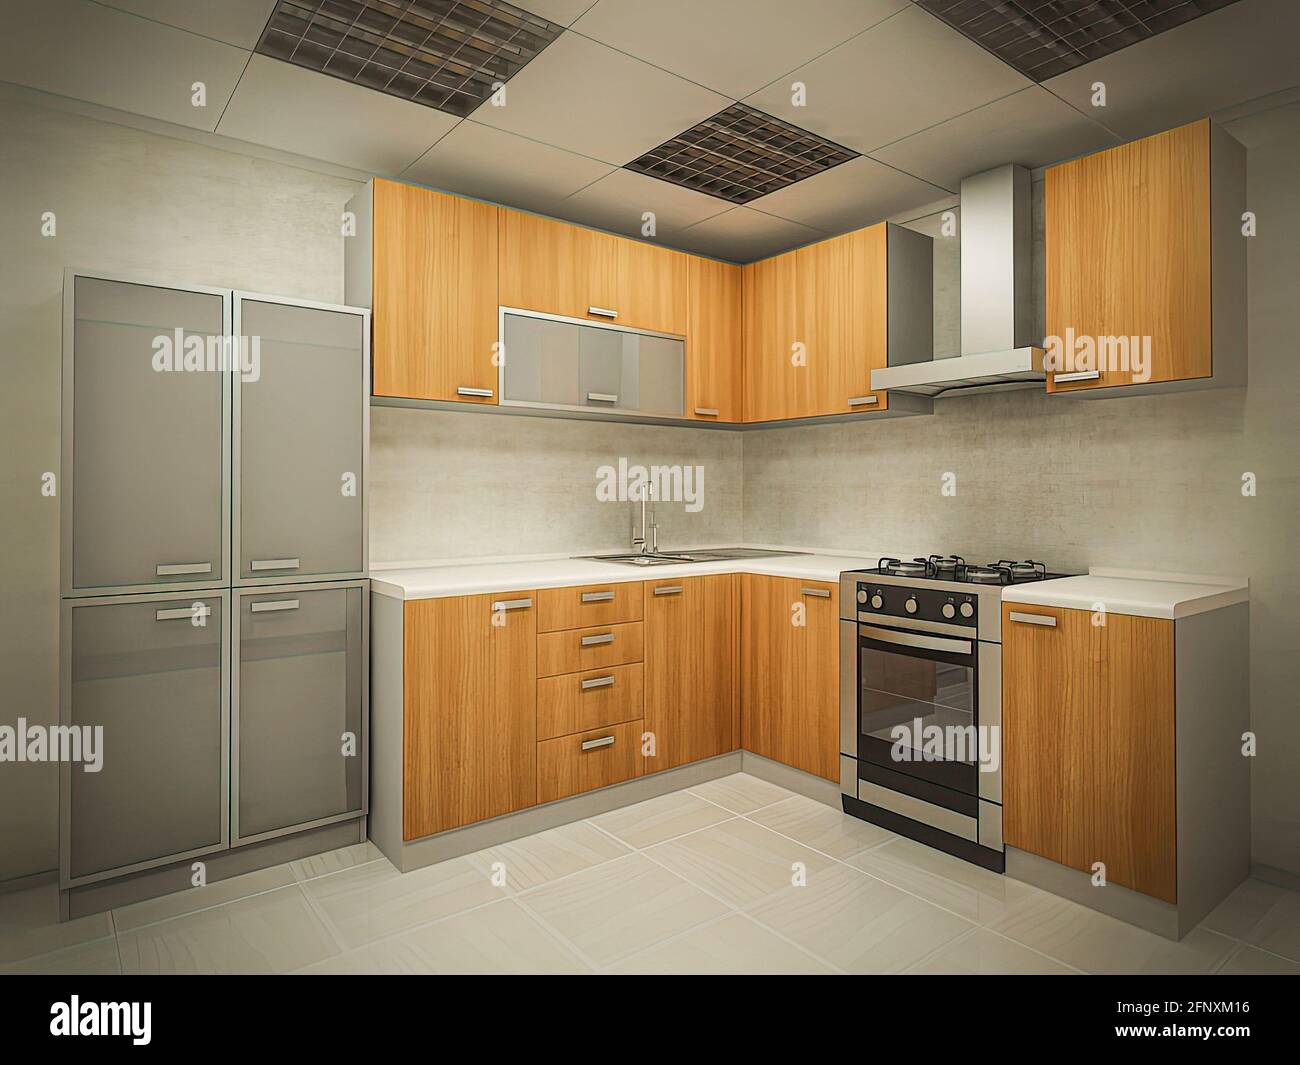 illustrazione in 3d del concetto di cucina moderna in stile tradizionale. Design interno della cucina in colori chiari. Foto Stock